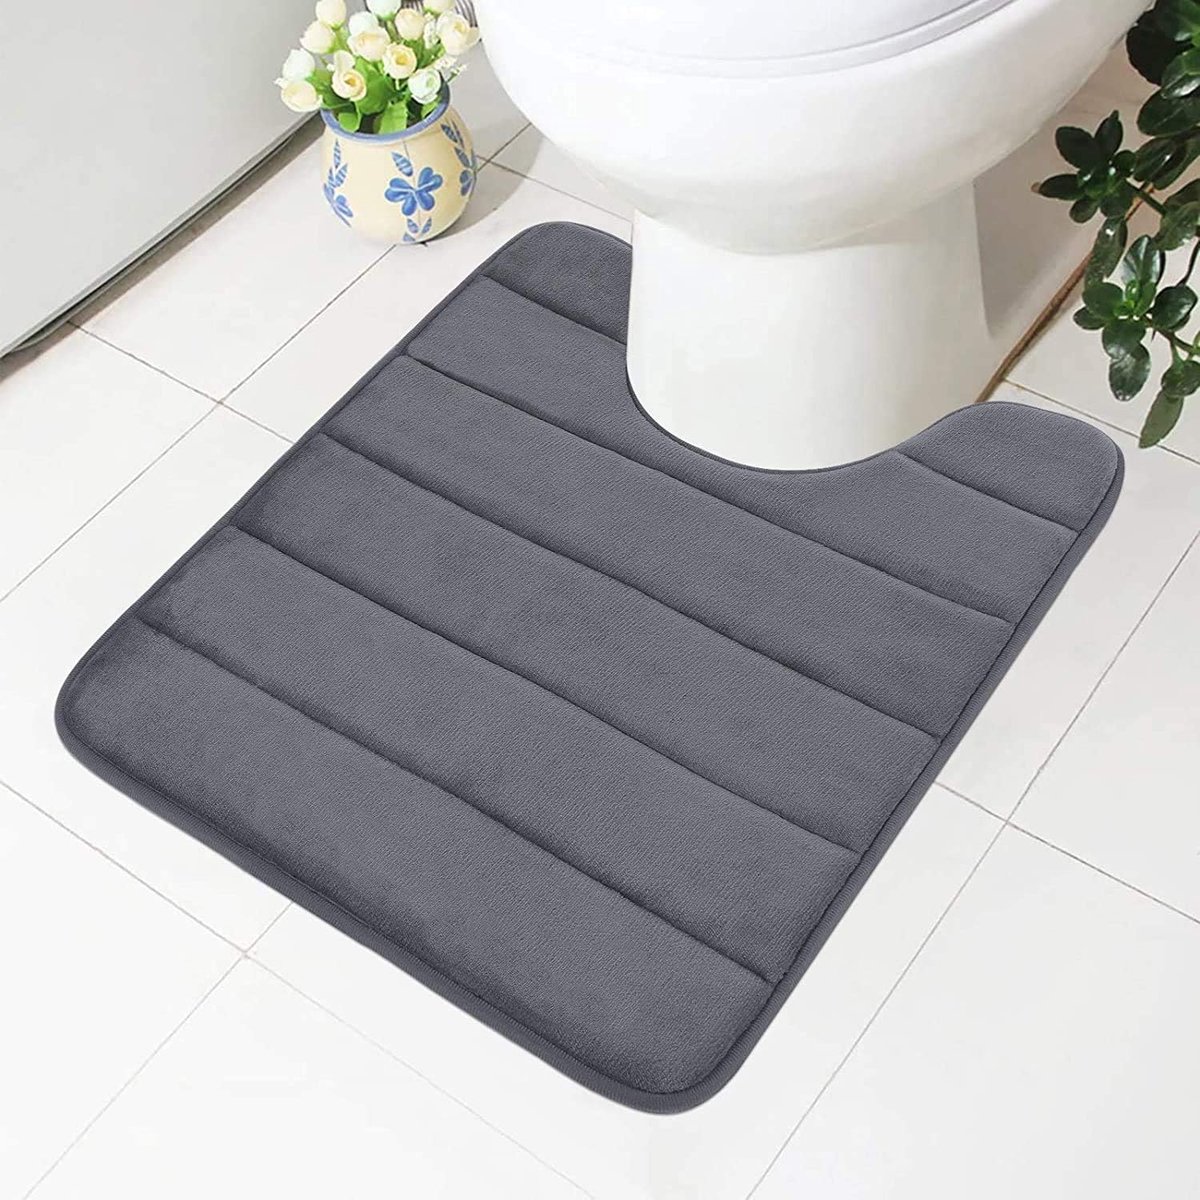 Traagschuim antislip zachte mat toilet met uitsparing 50 x 60 cm, absorberende badmat, staande wc, wasbare badmat voor toilet, donkergrijs